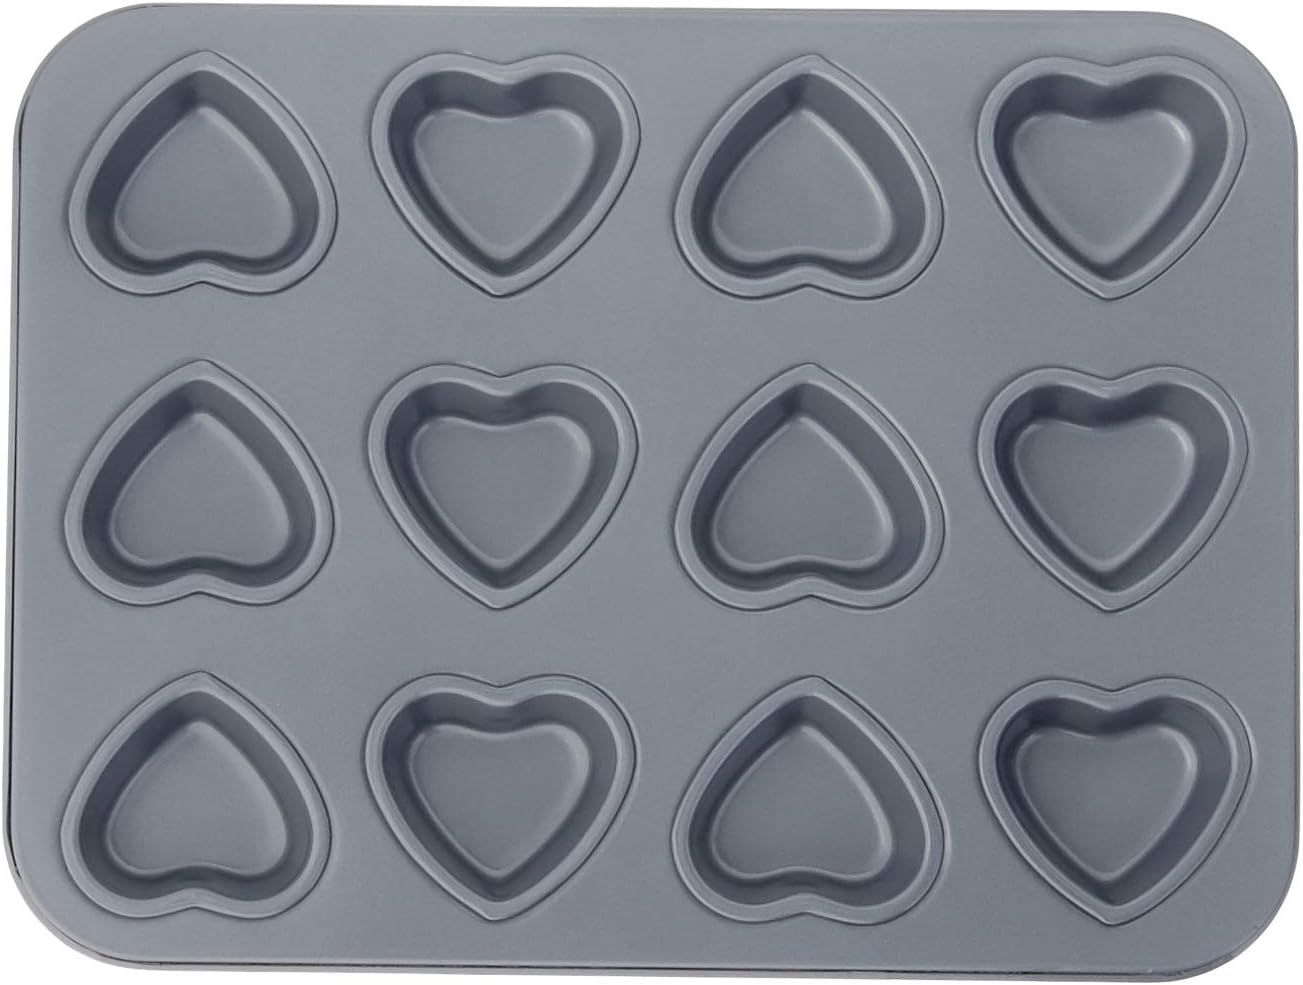 Fox Run Mini Heart Muffin Pan, 12-Cup, Preferred Non-Stick, Gray | Amazon (US)